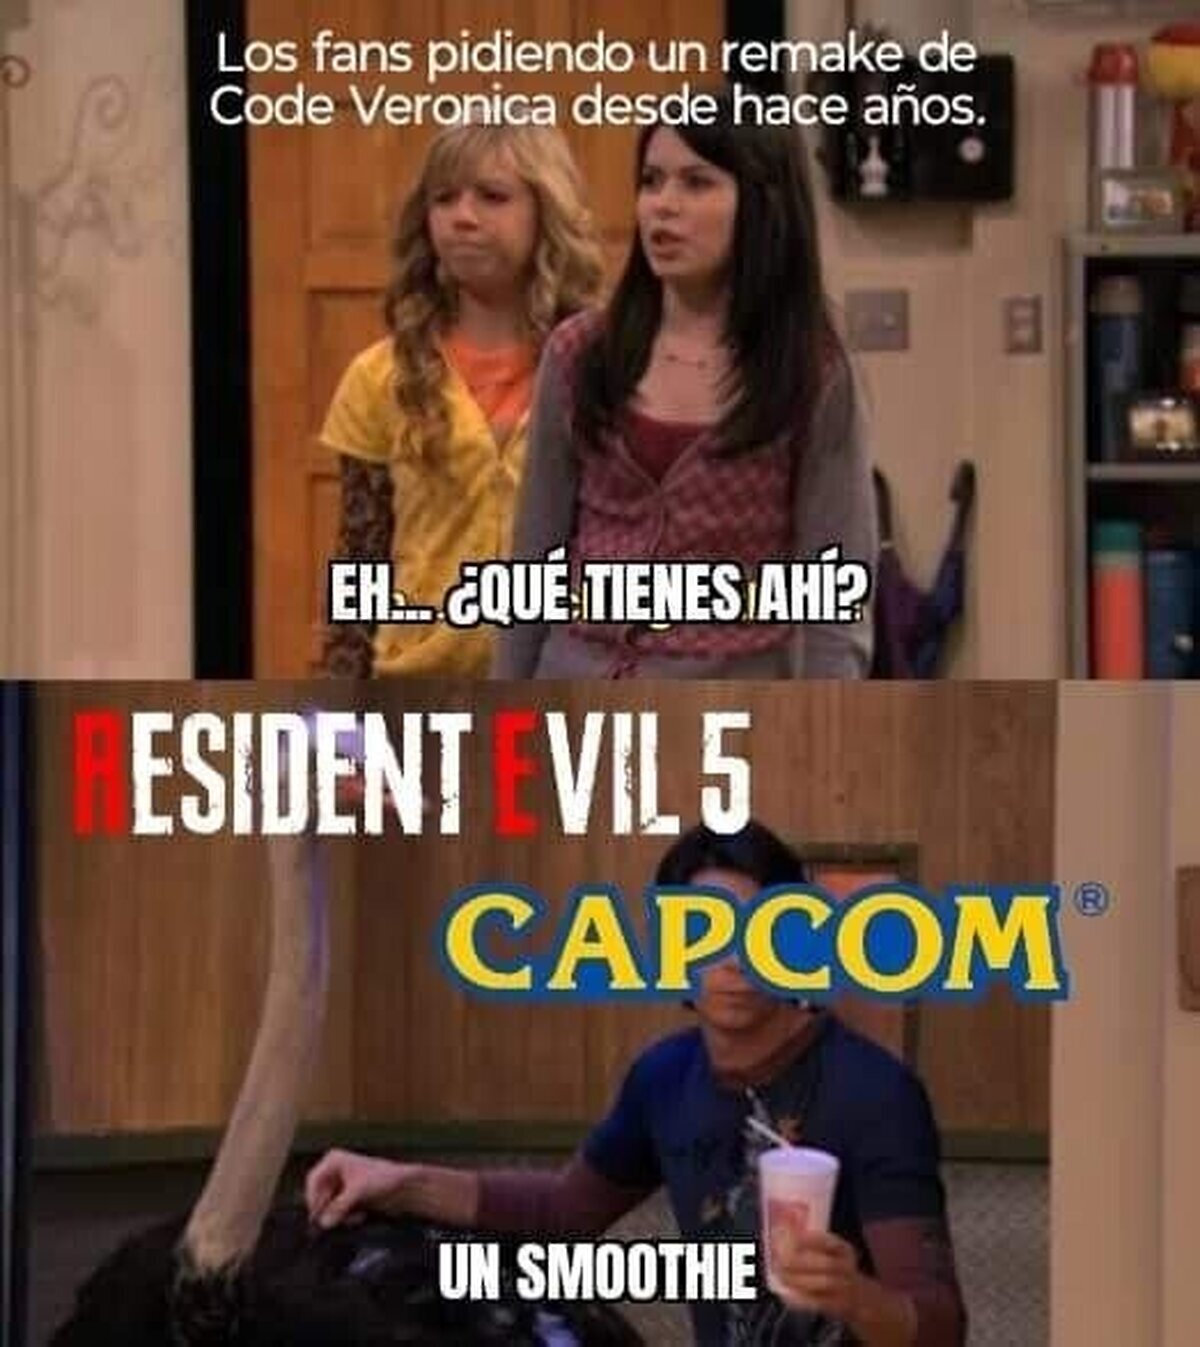 No por favor, Capcom